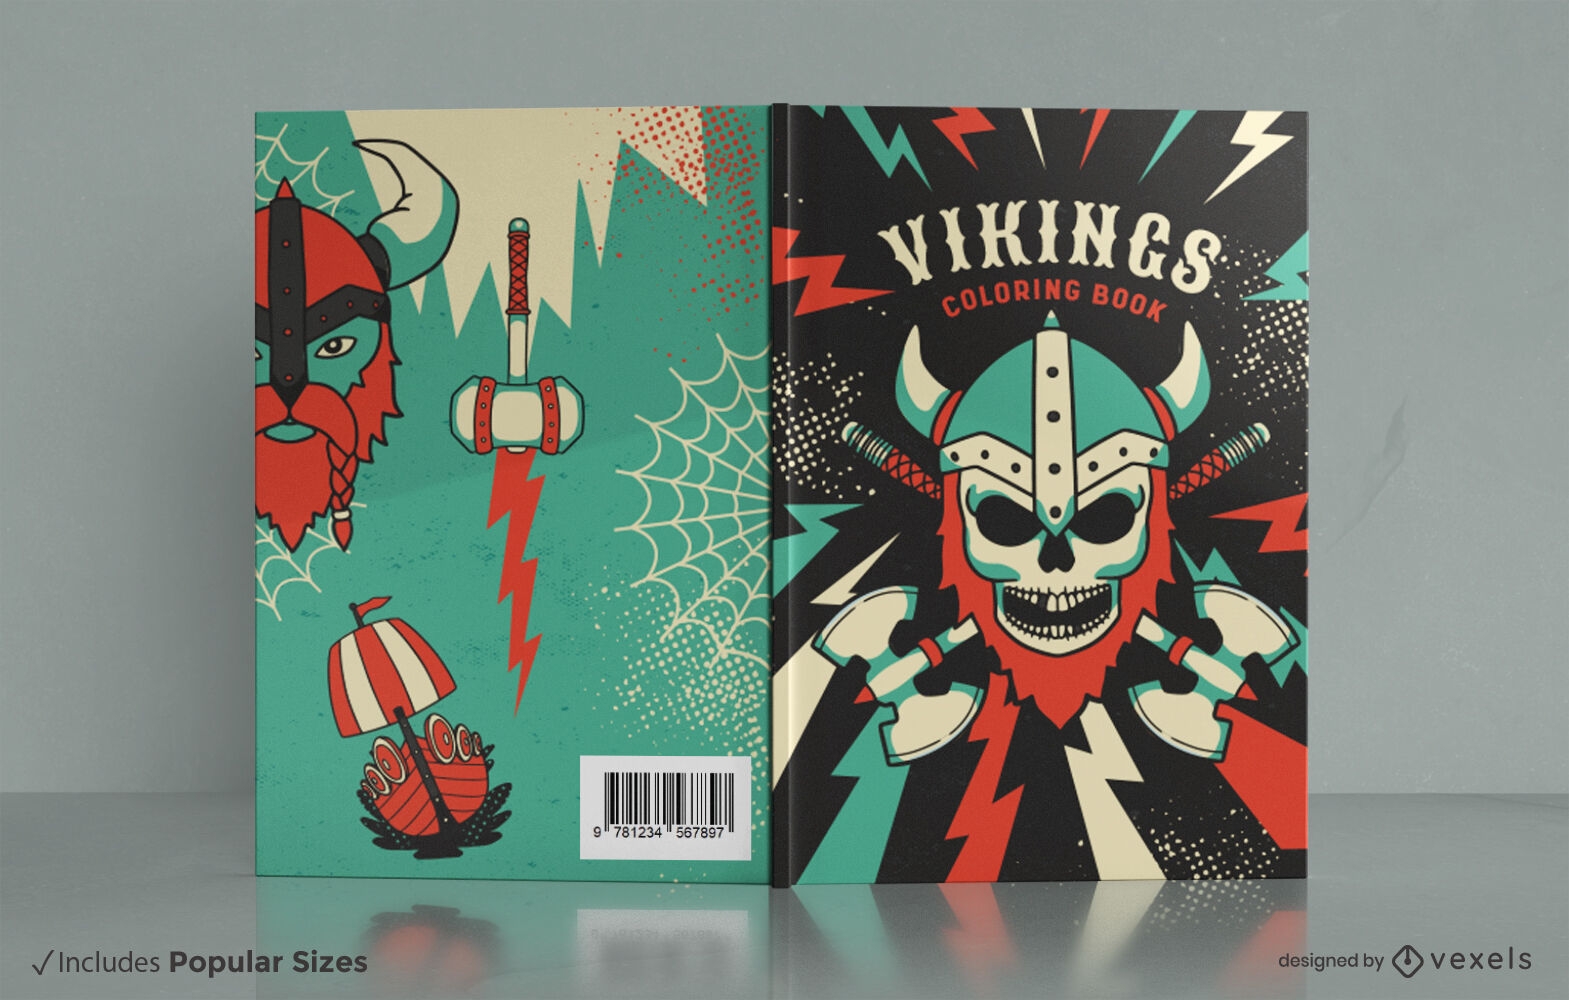 Vikings coloring book cover design